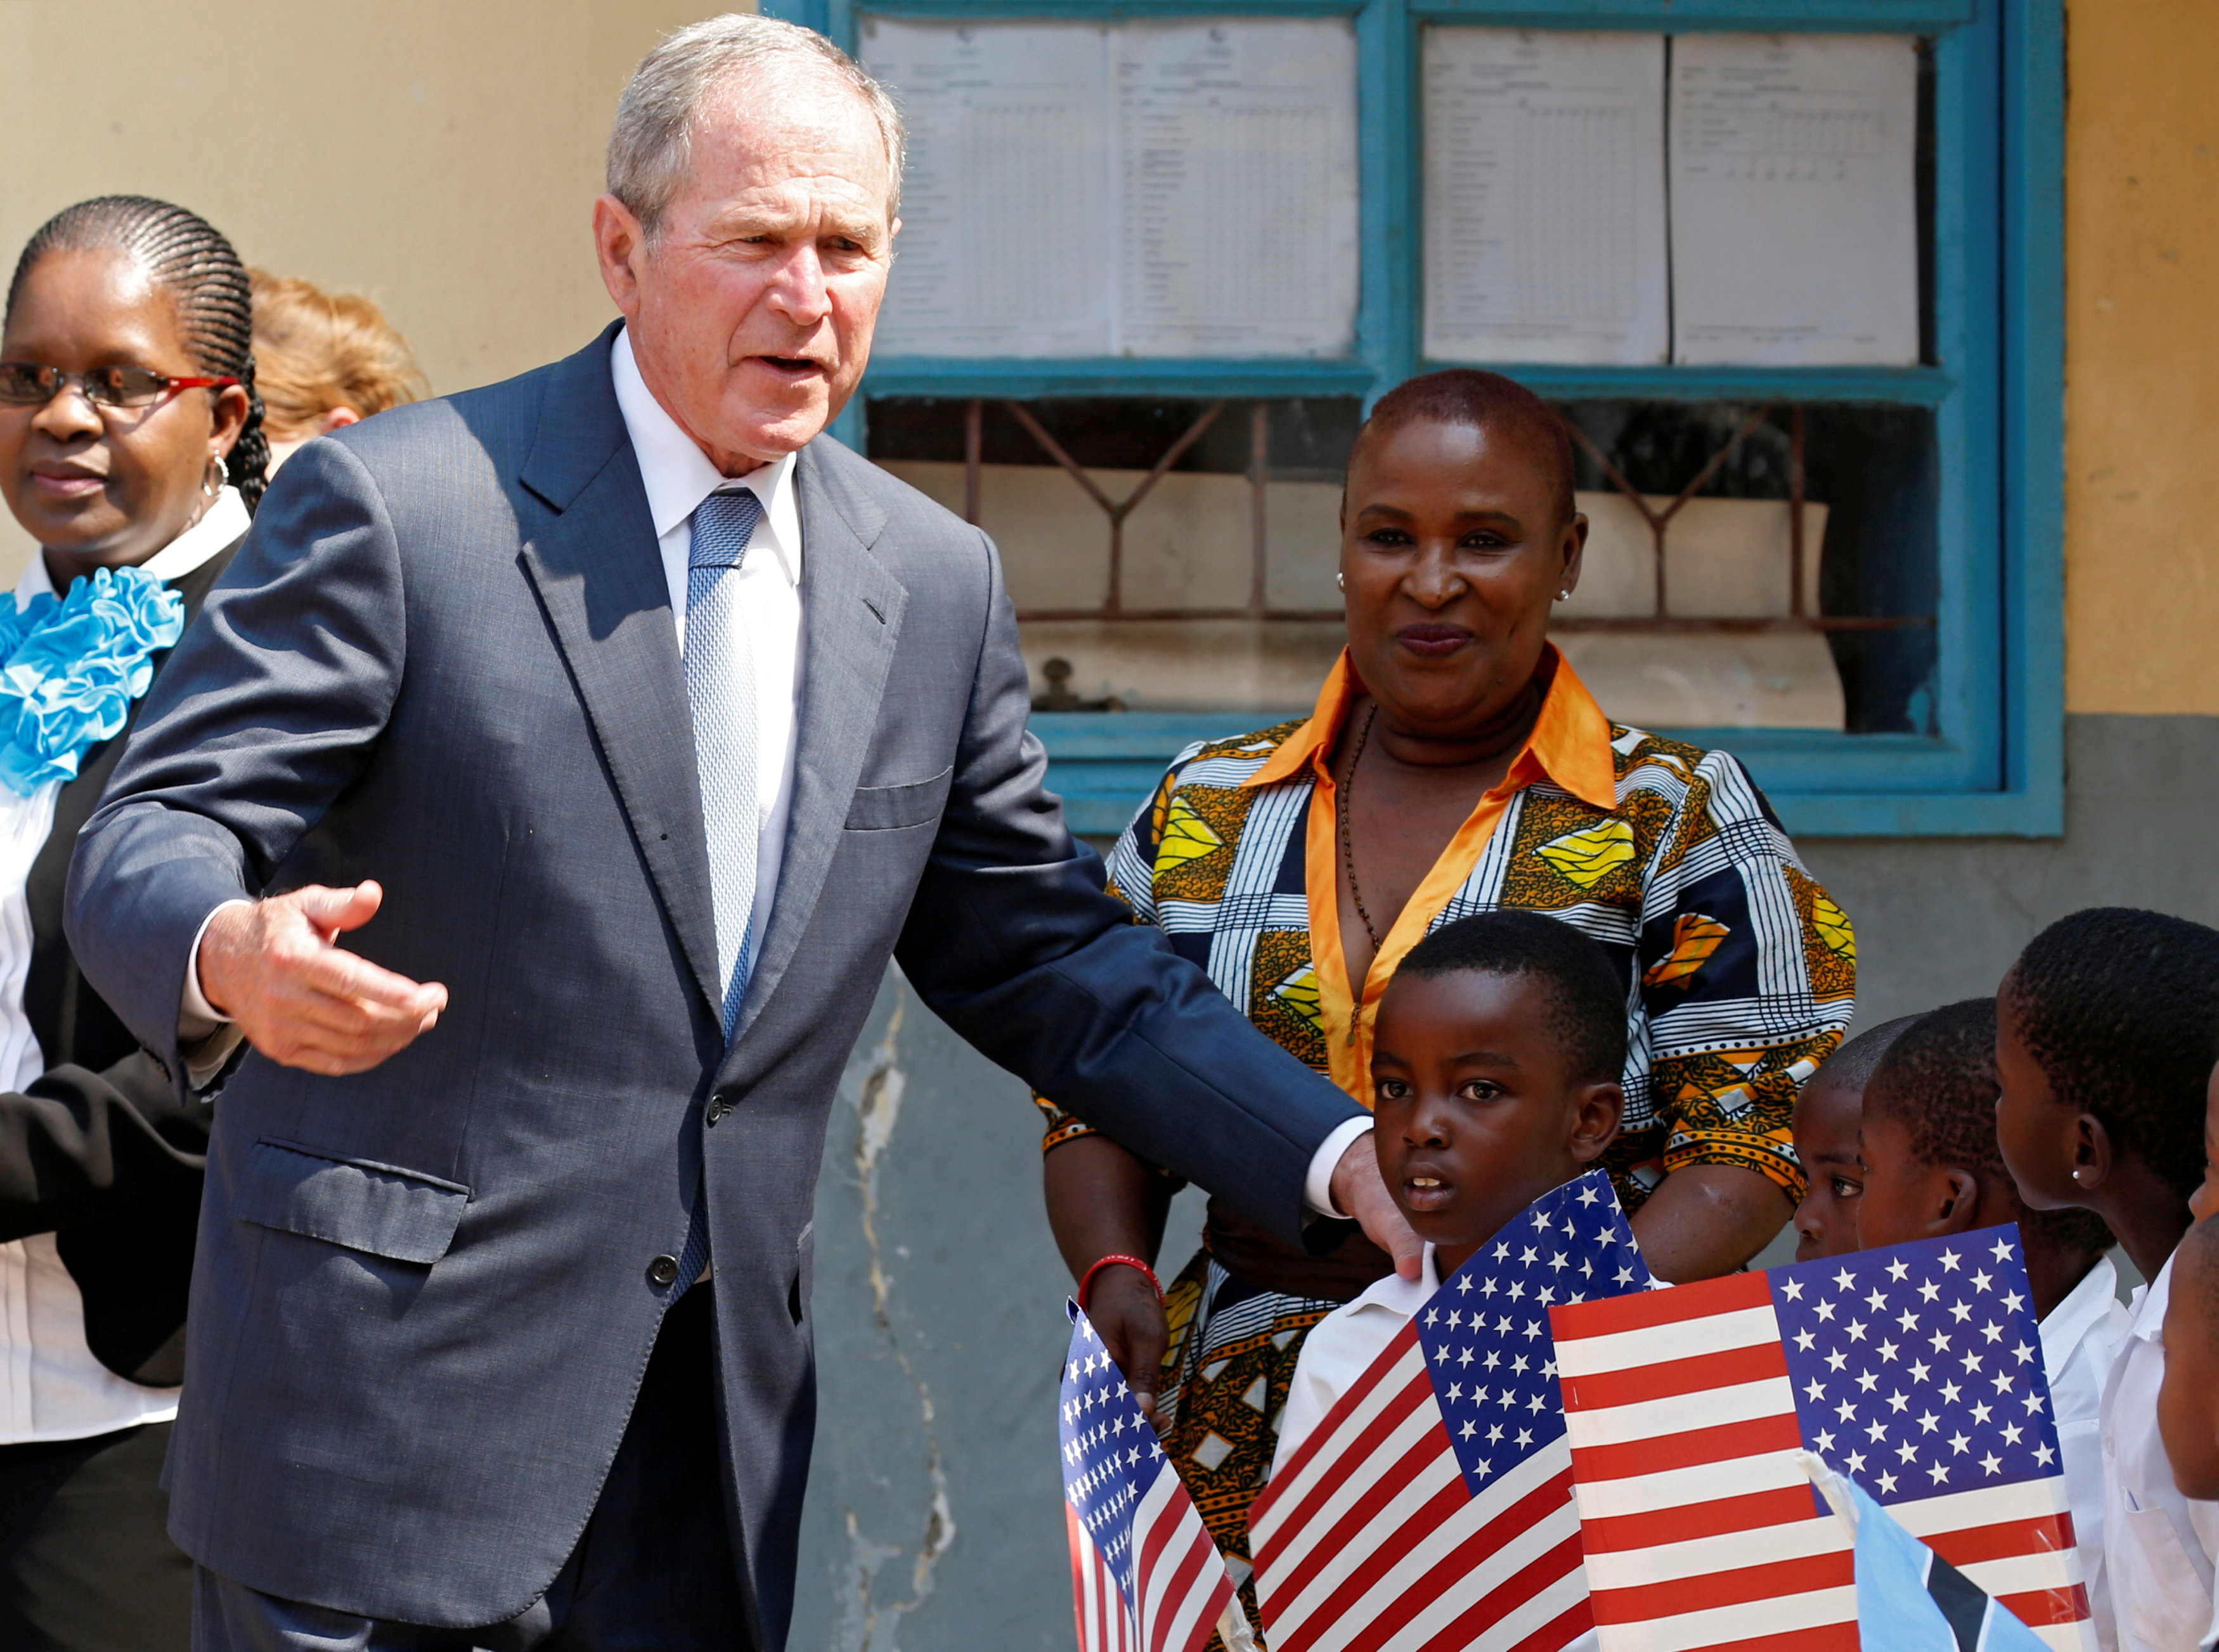 جورج بوش مع أطفال يحملون علم أمريكا